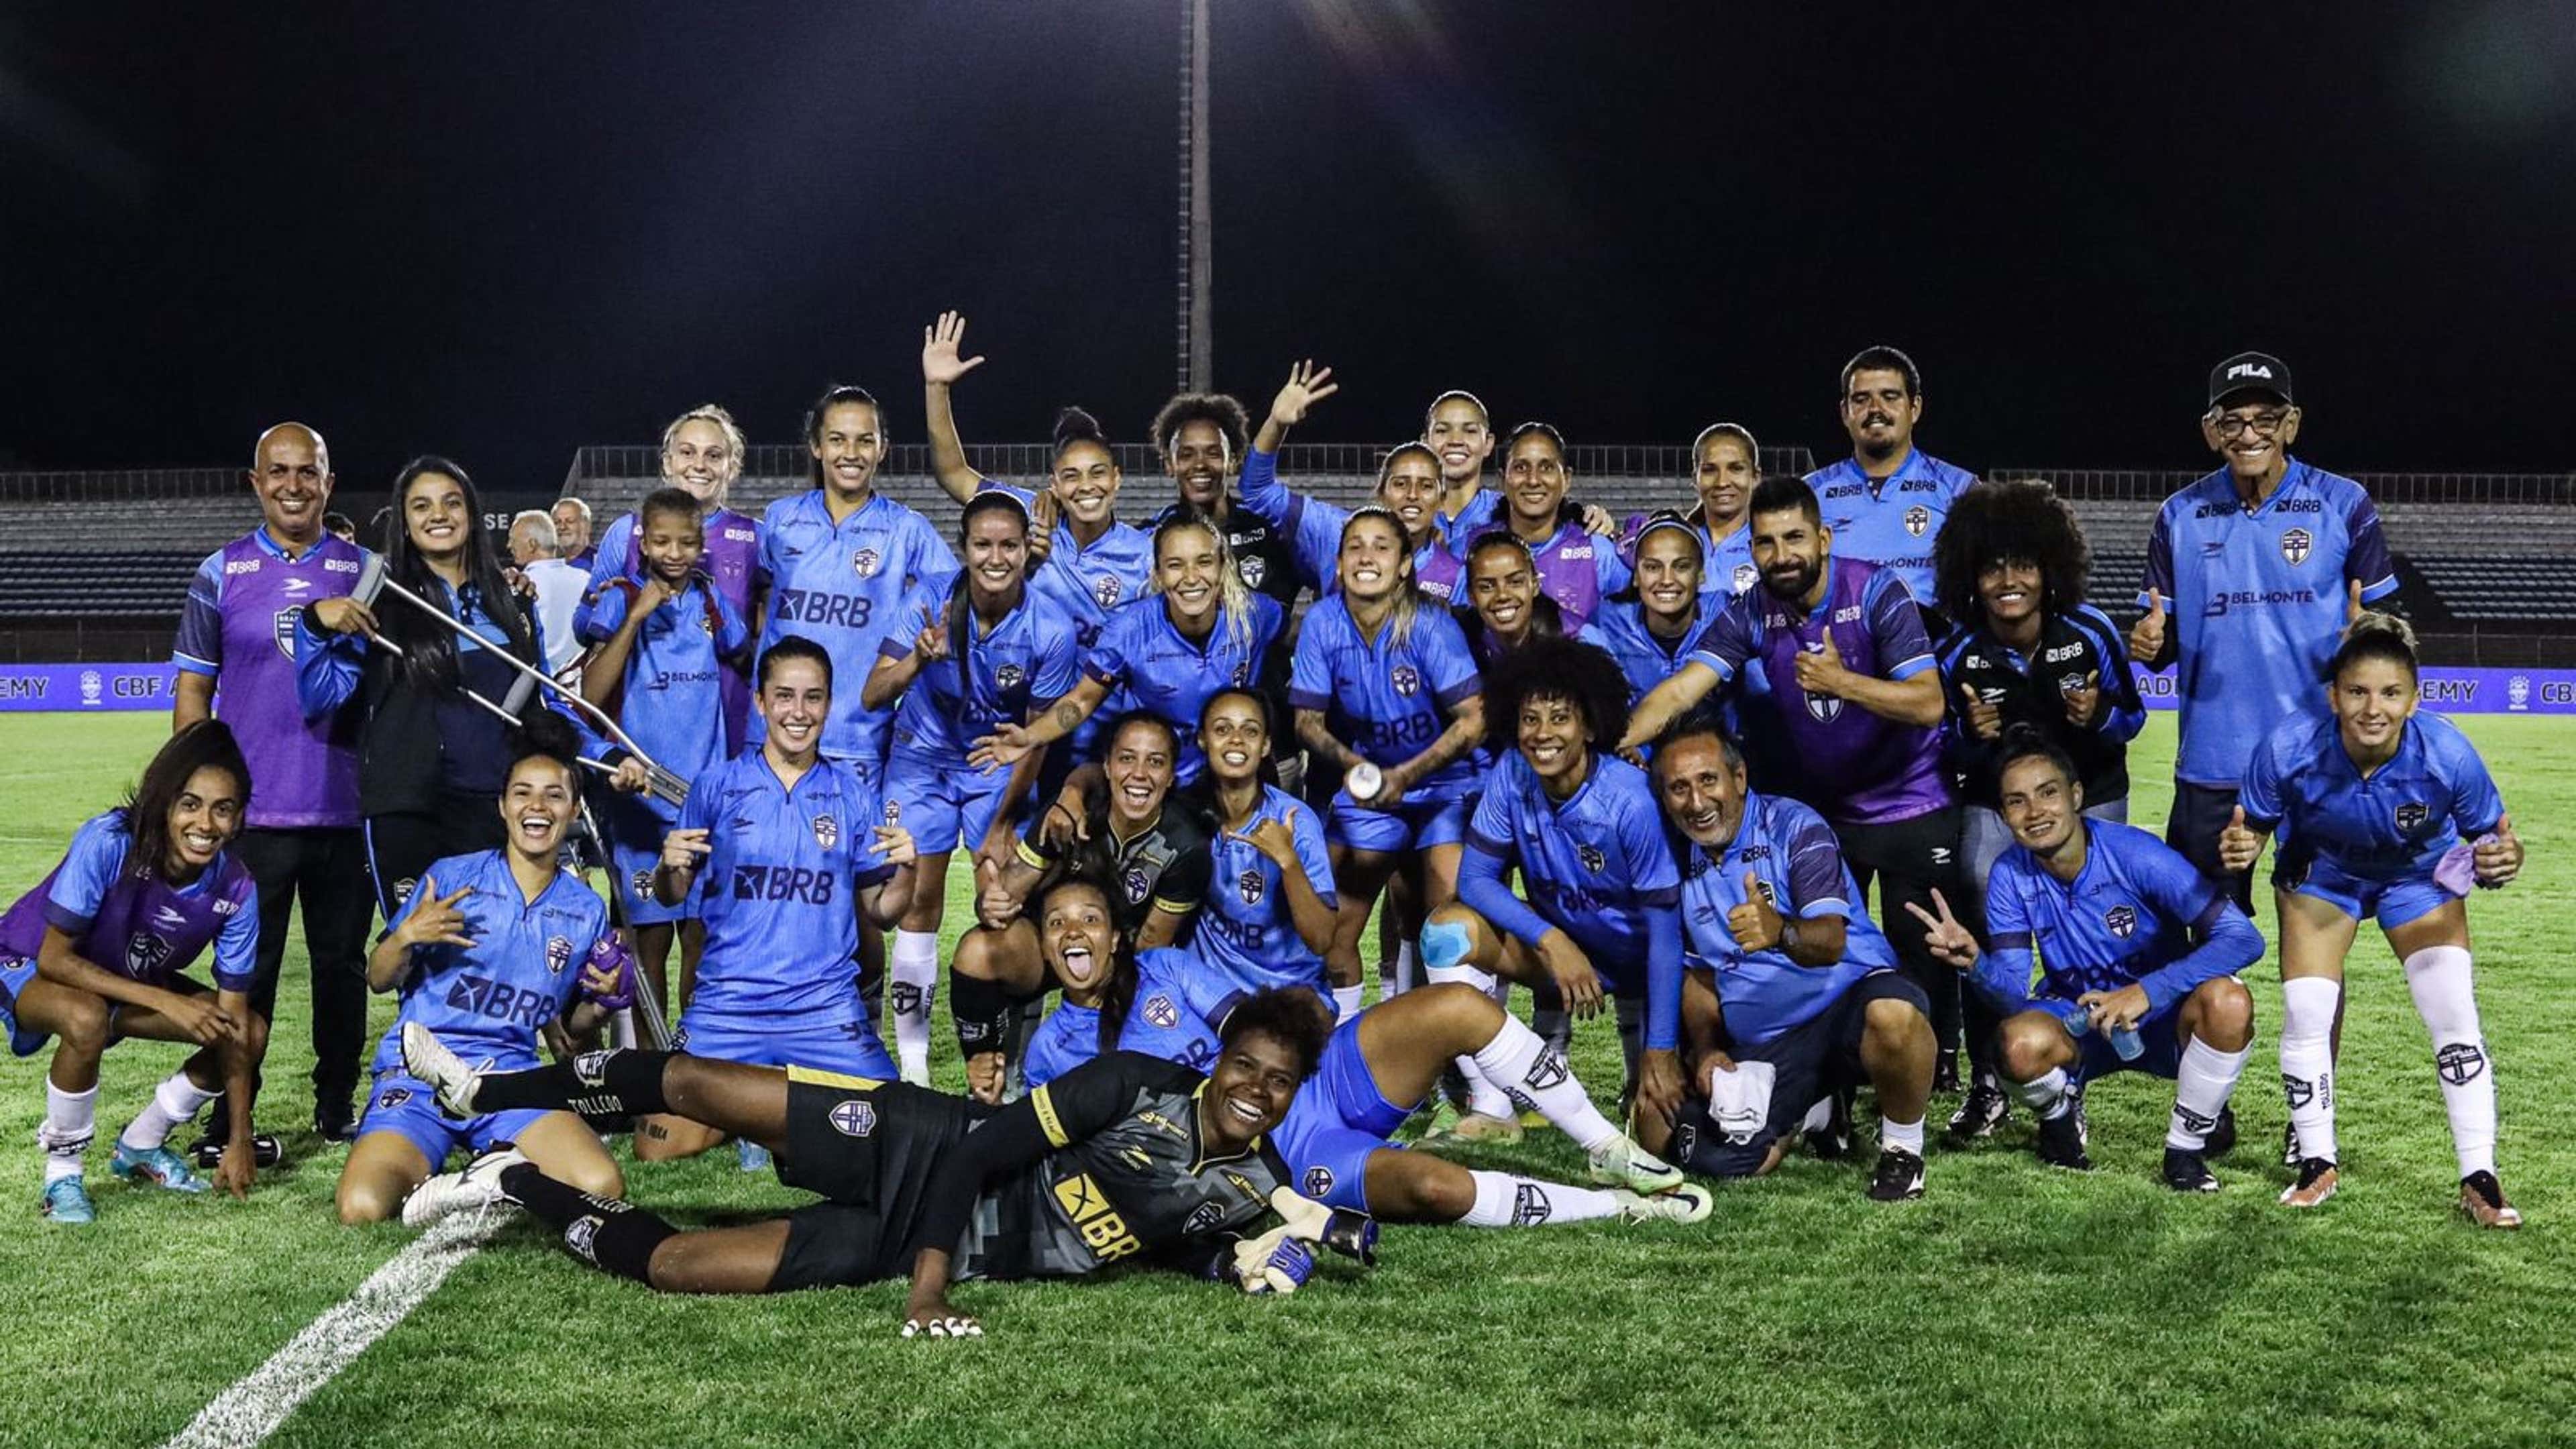 Futebol Feminino no Brasil em 2022: evolução e aspectos que precisam ser  melhorados